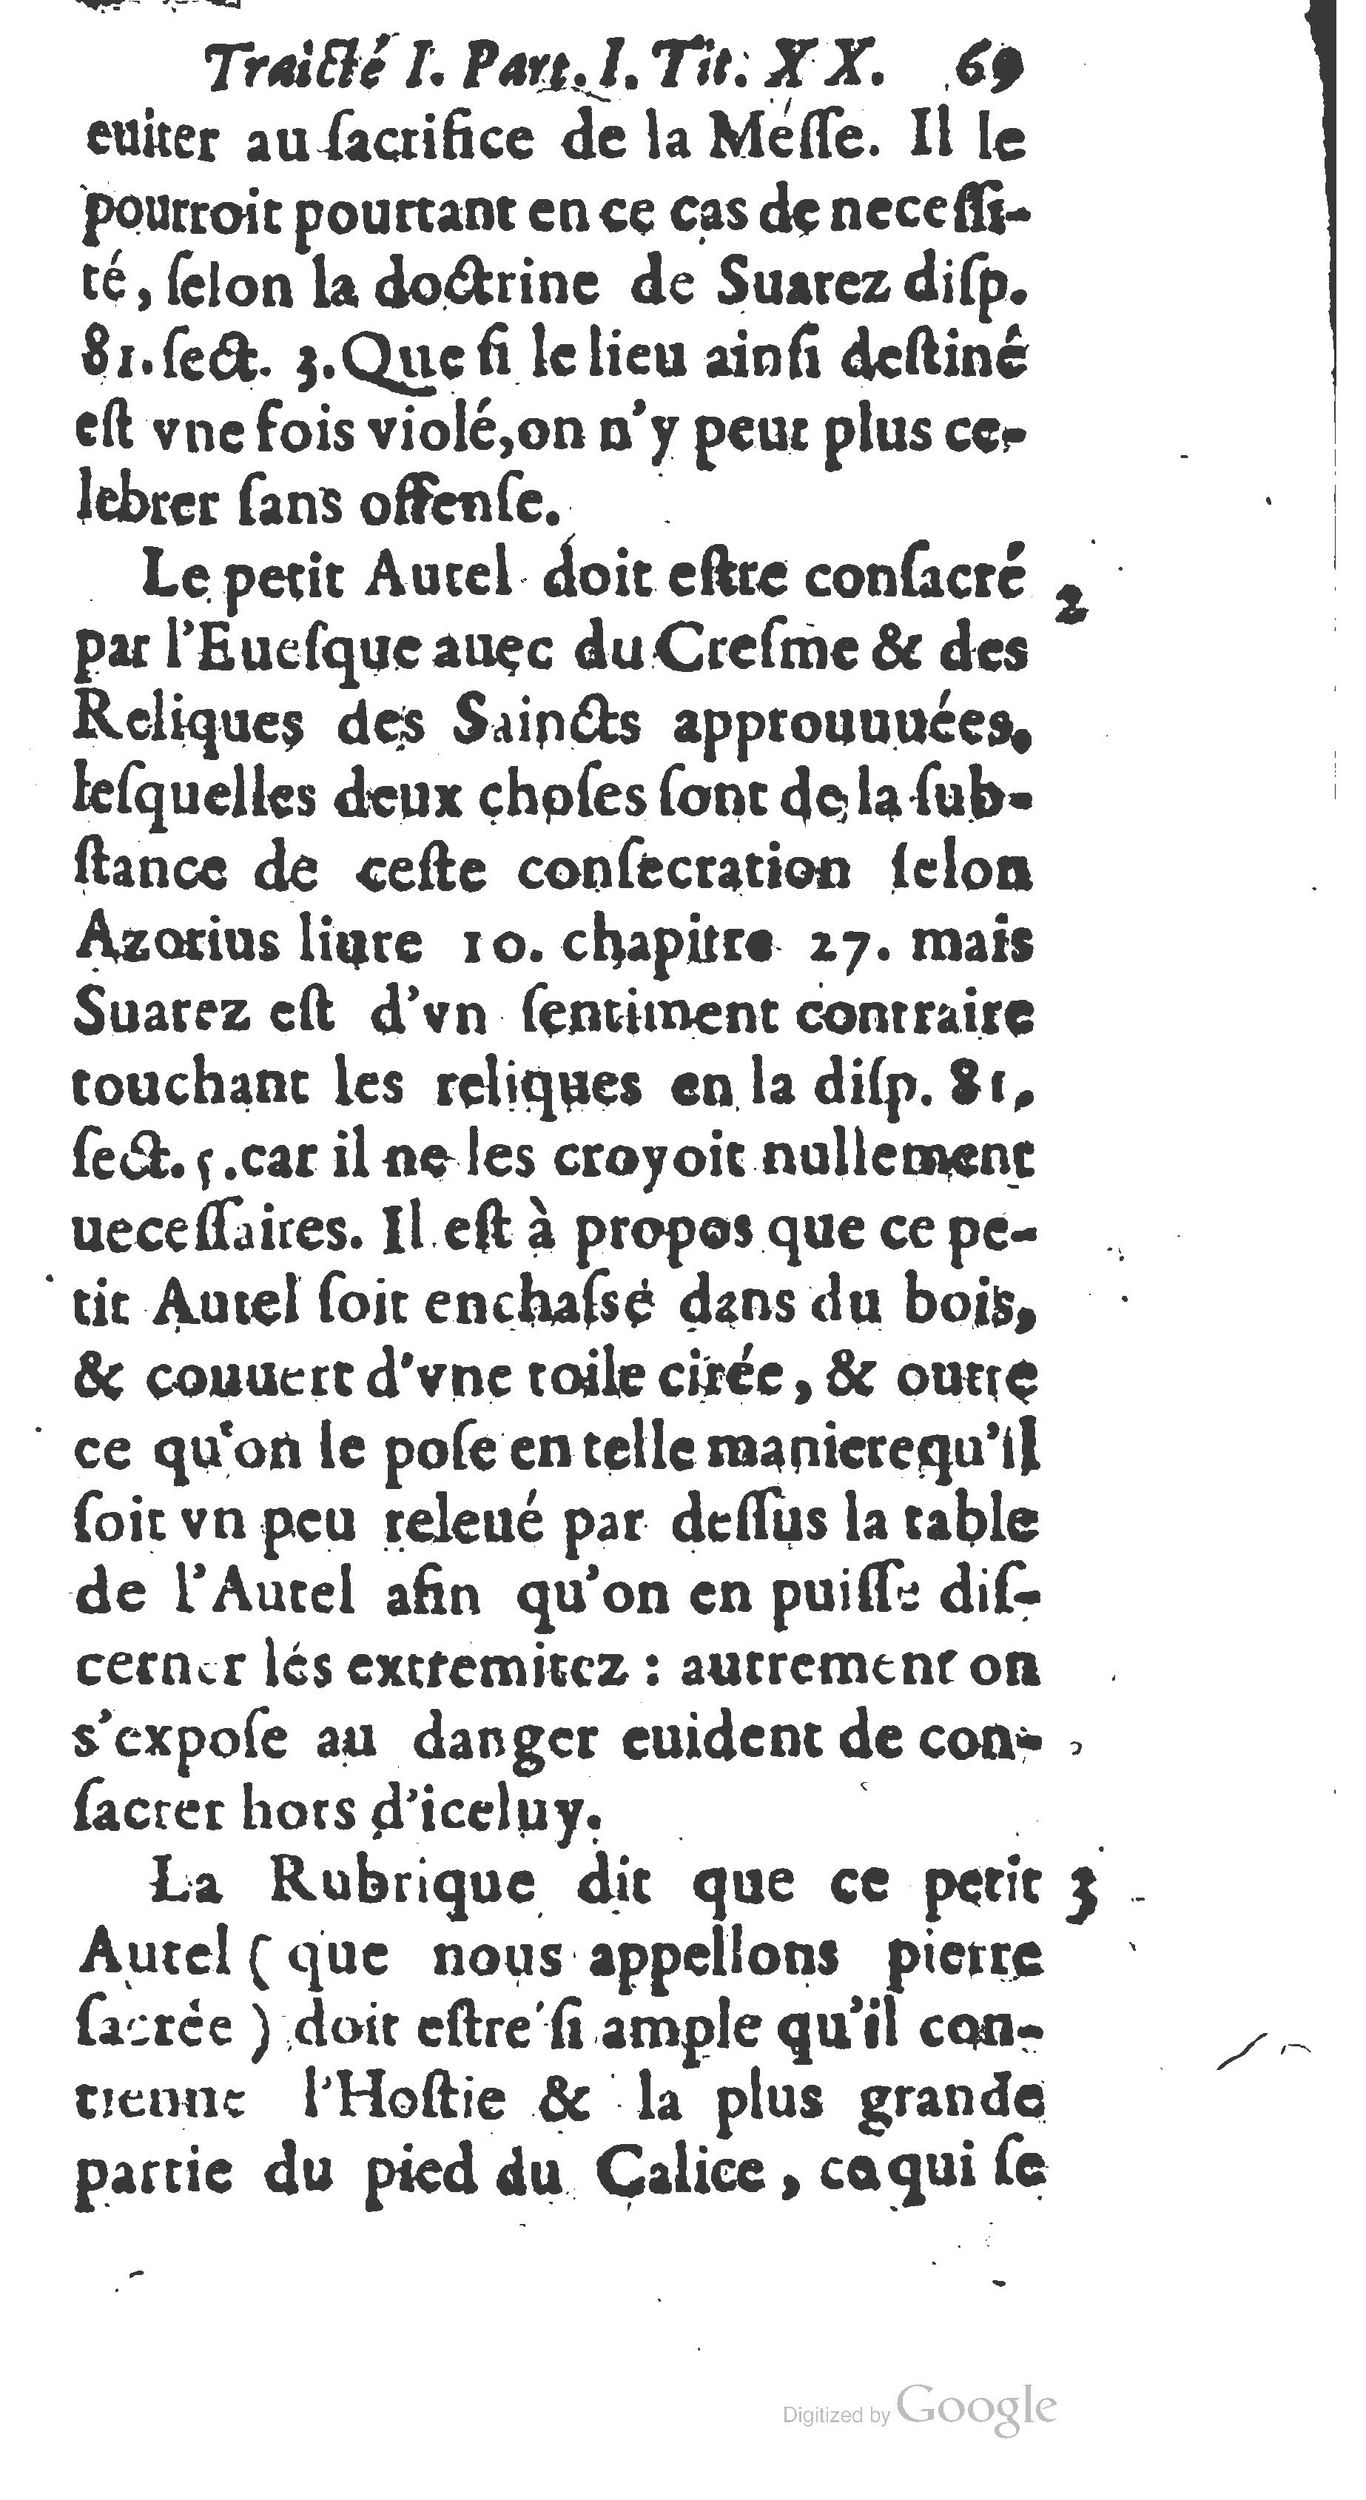 1651 Abrégé du trésor des cérémonies ecclésiastiques Guillermet_BM Lyon_Page_088.jpg